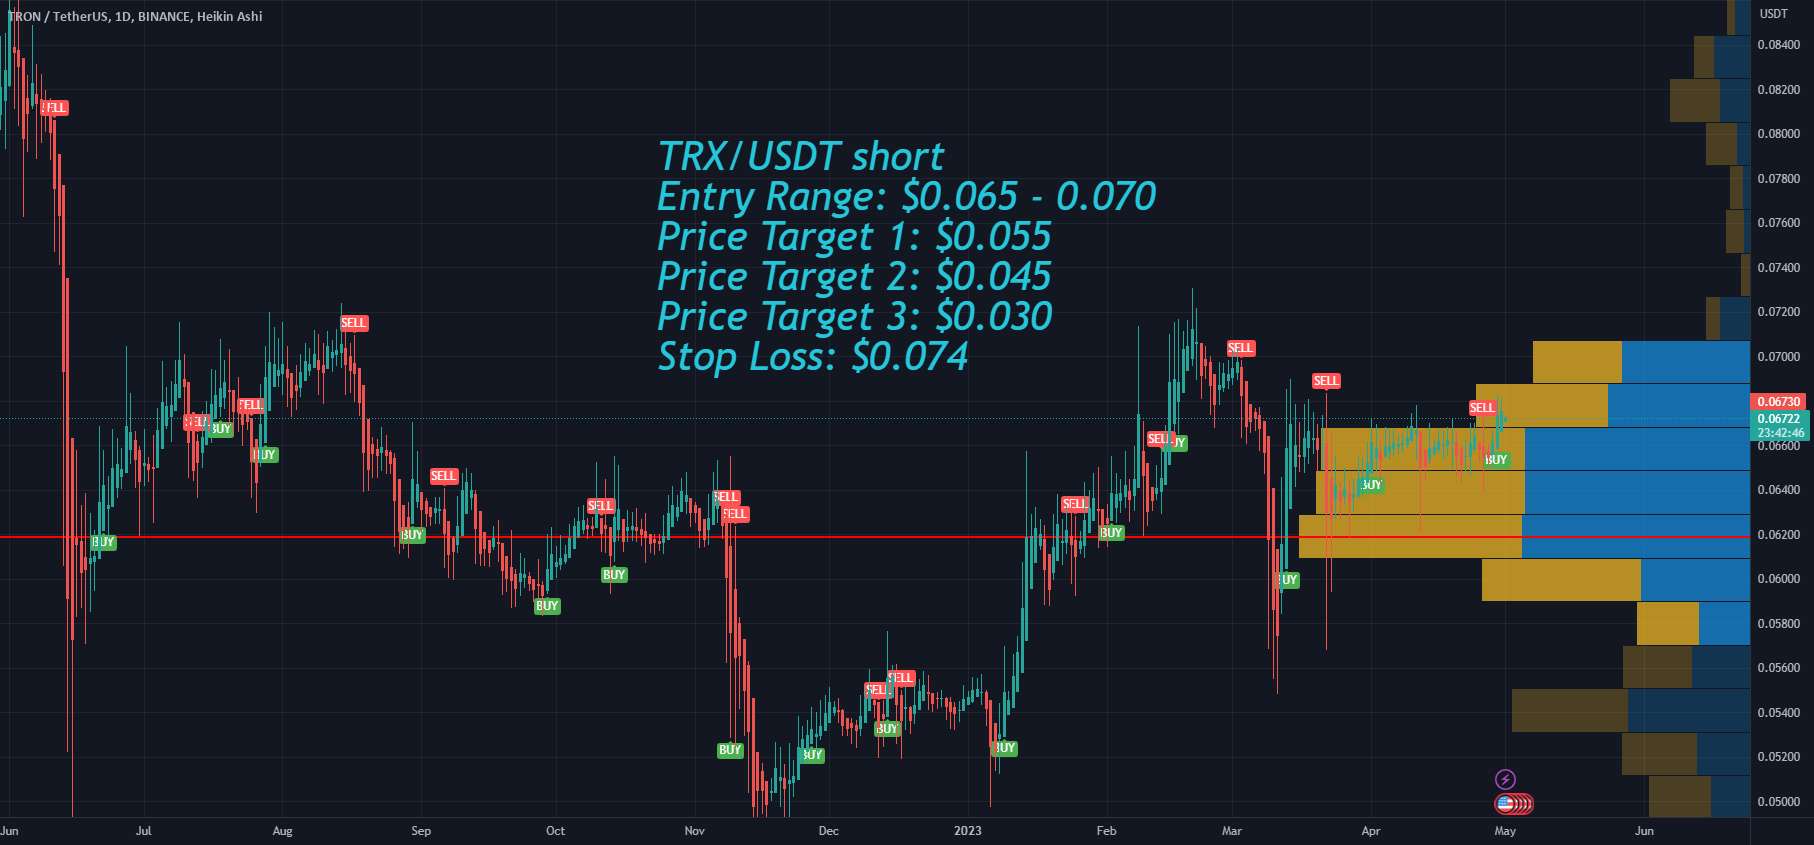  تحلیل ترون - هدف گذاری قیمت Tron TRX پس از نشست FOMC در این هفته